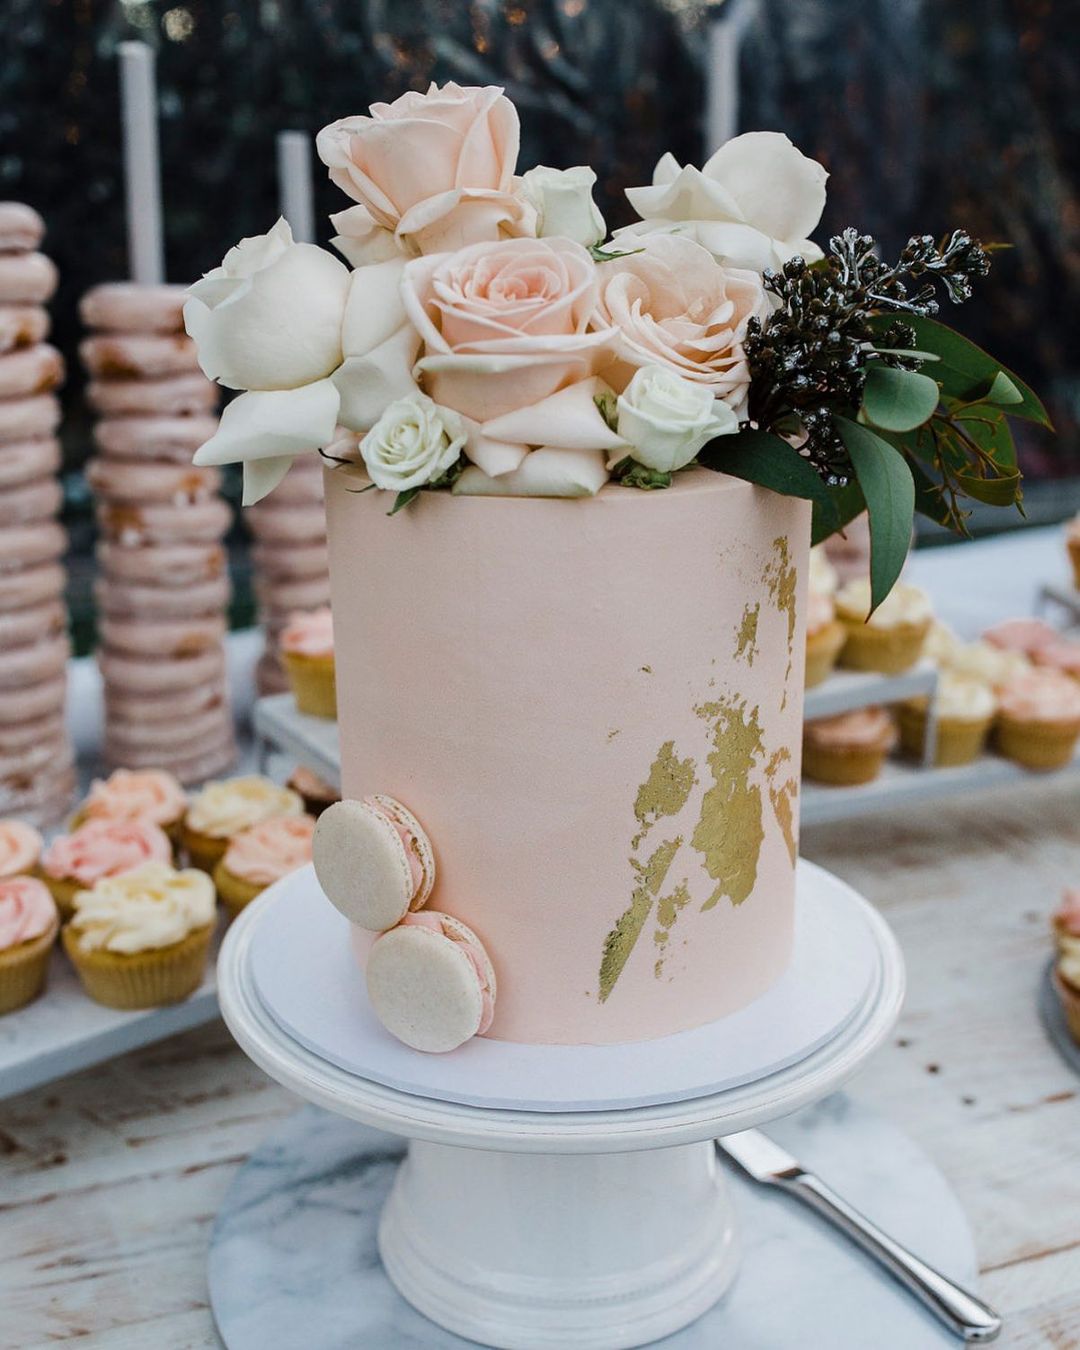 buttercream wedding cakes tender wedding cakes